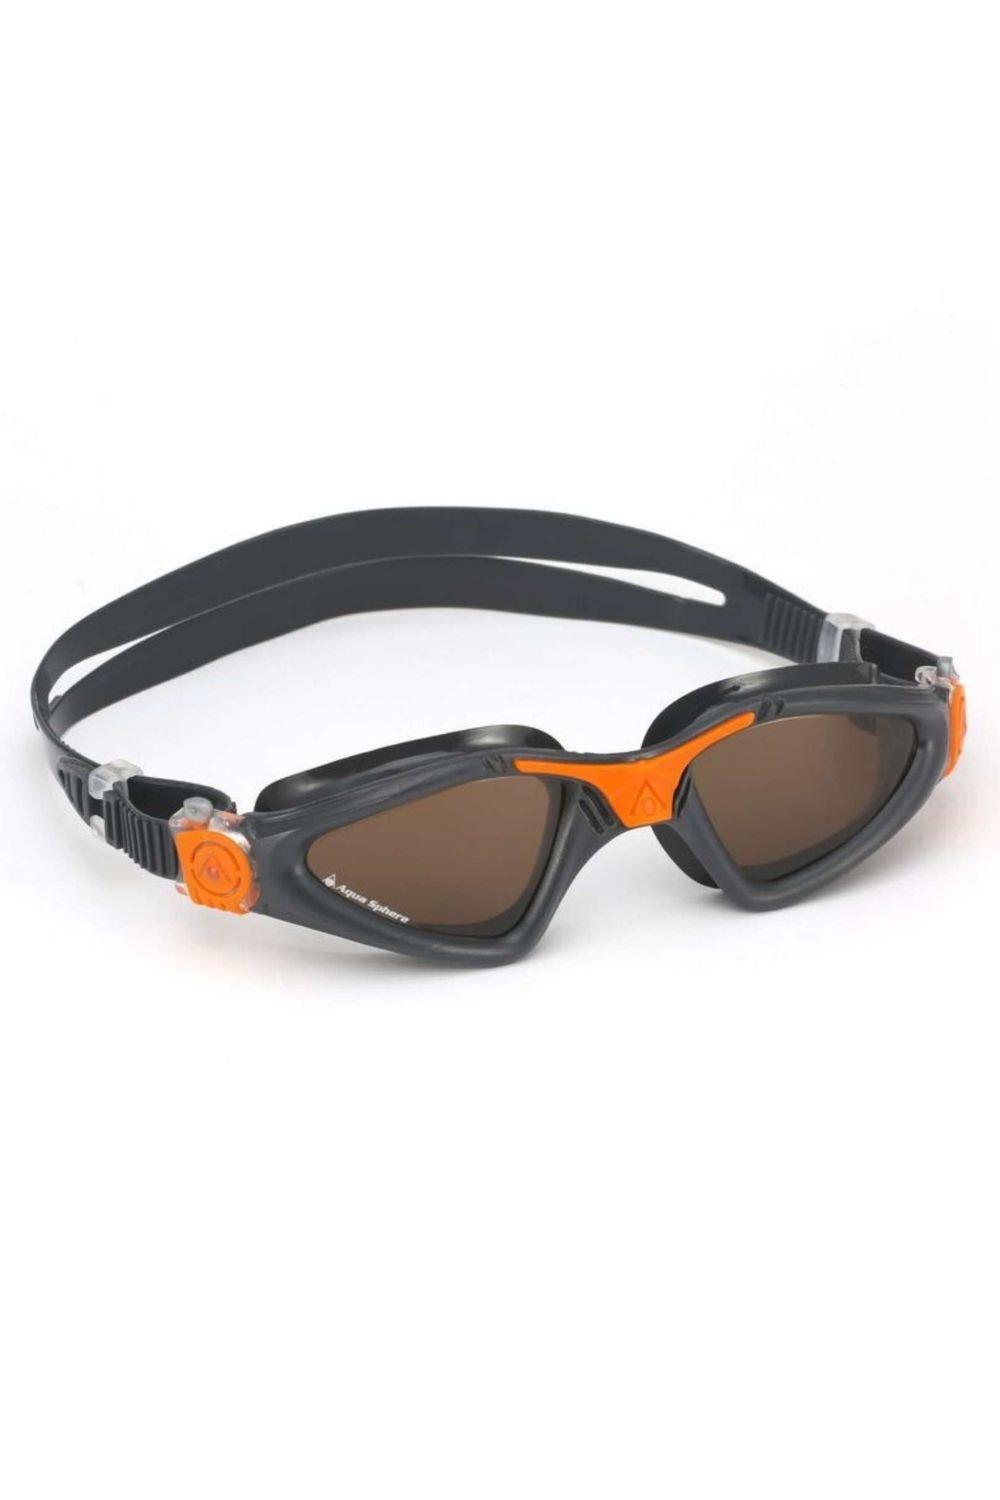 Aquasphere Kayenne Swimming Goggle - Polarized Lenses|grey